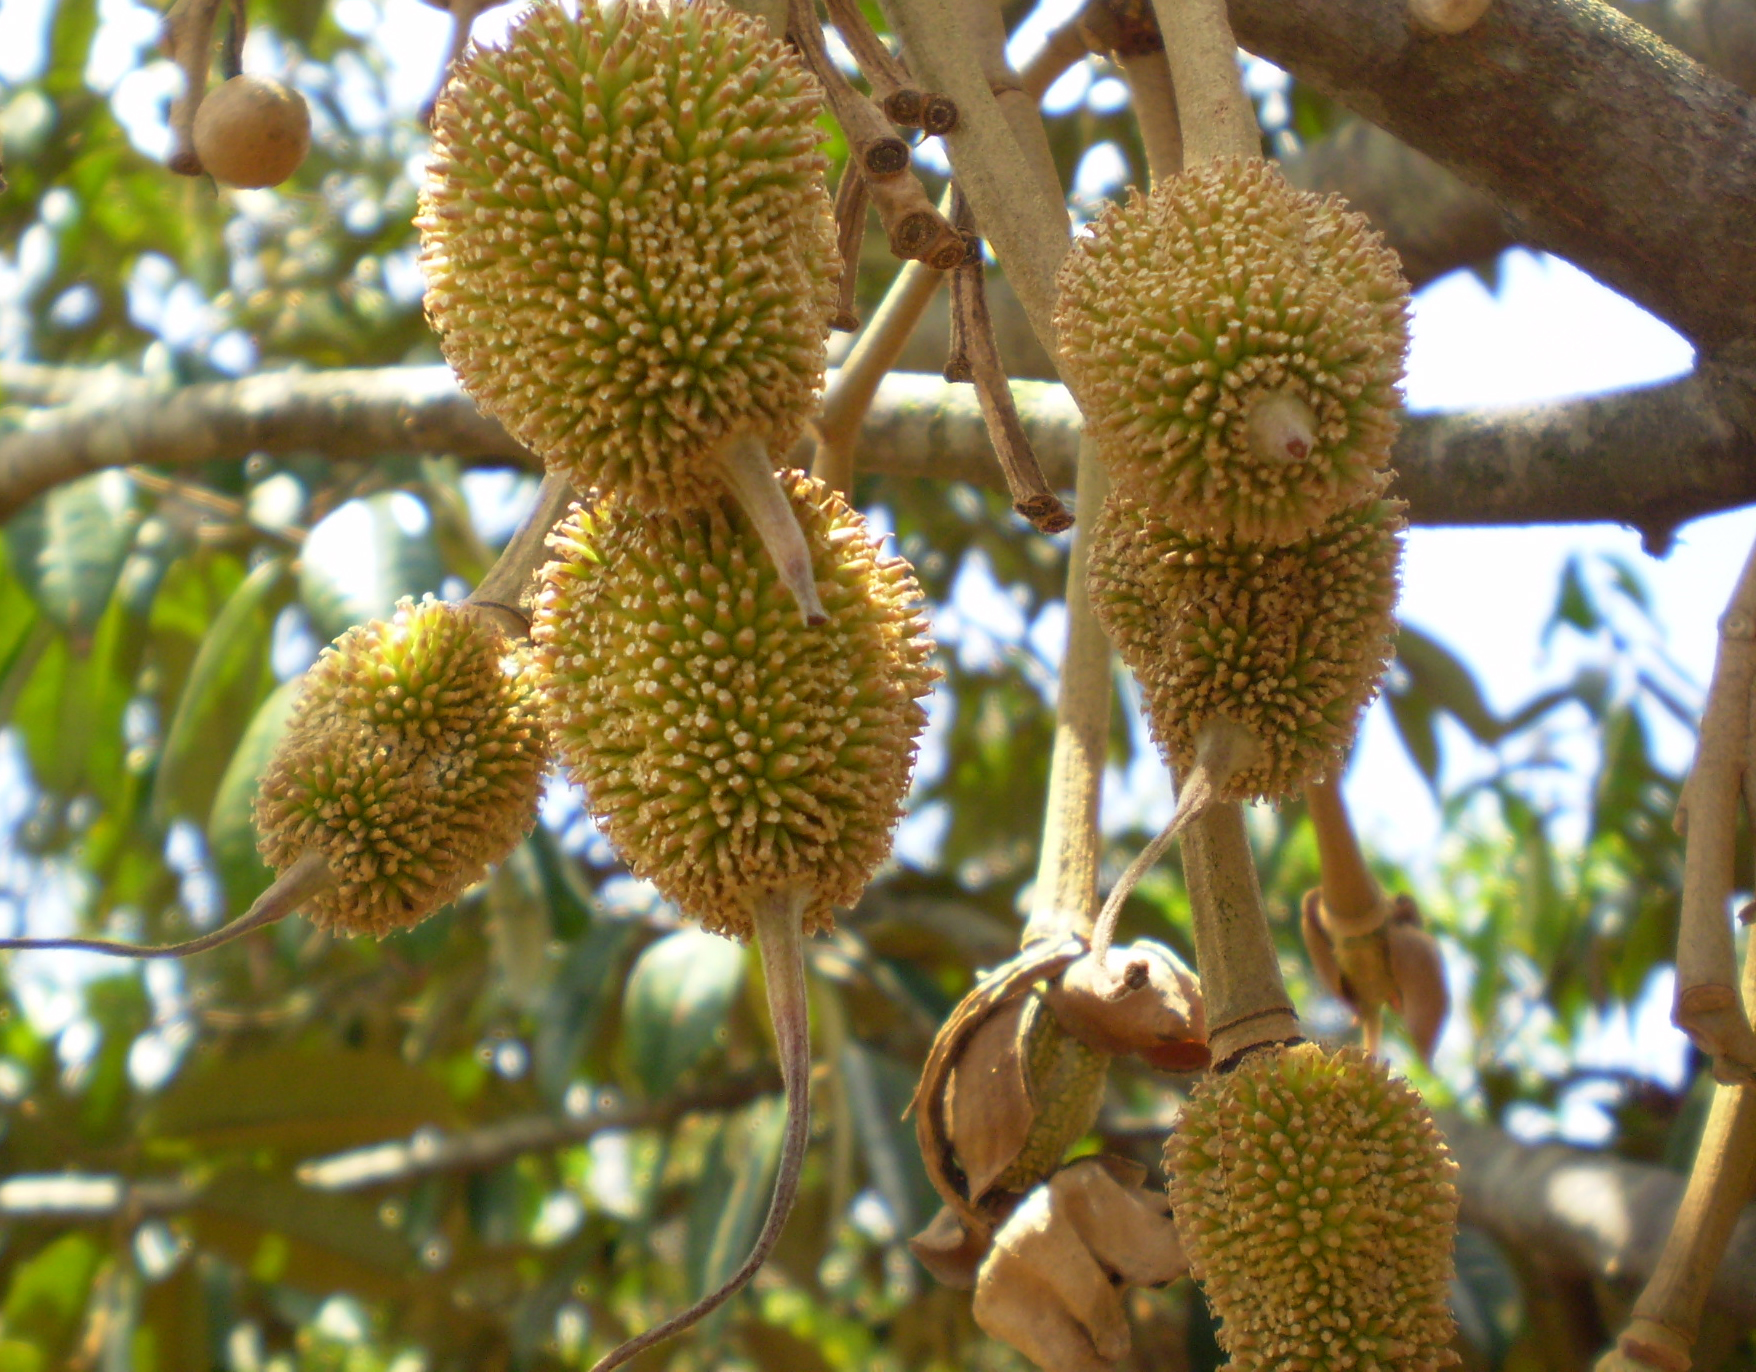 File:Tender fruit's Durian tree.JPG - Wikimedia Commons